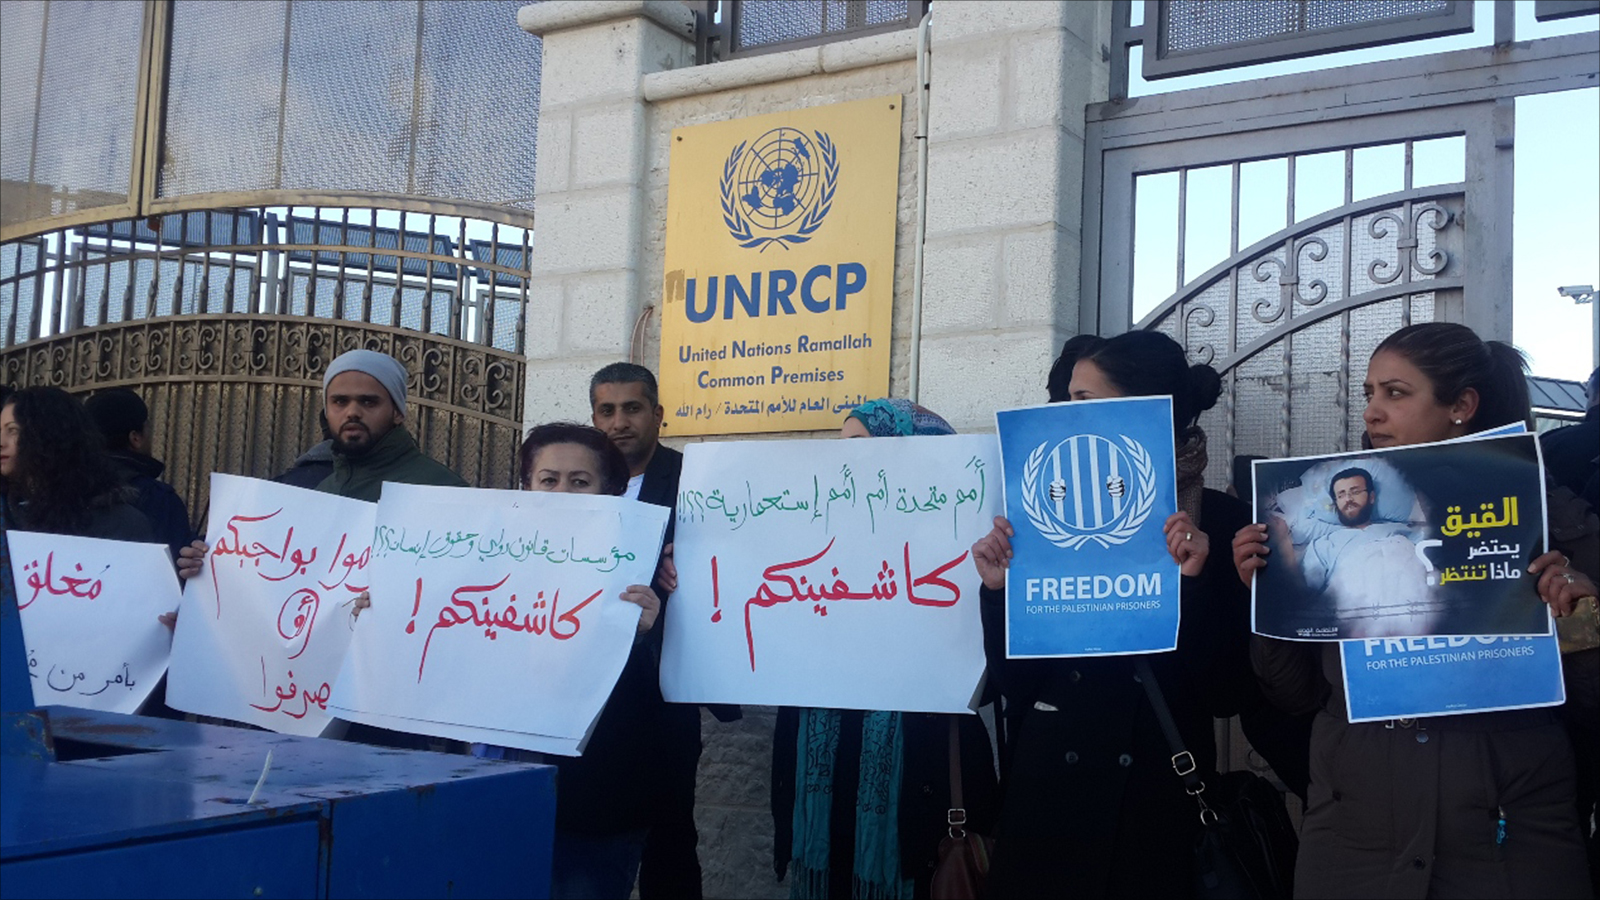 ‪نشطاء فلسطينيون يغلقون مدخل مكتب الأمم المتحدة ويطالبون بان كي مون بالتدخل للإفراج عن القيق‬ (الجزيرة)